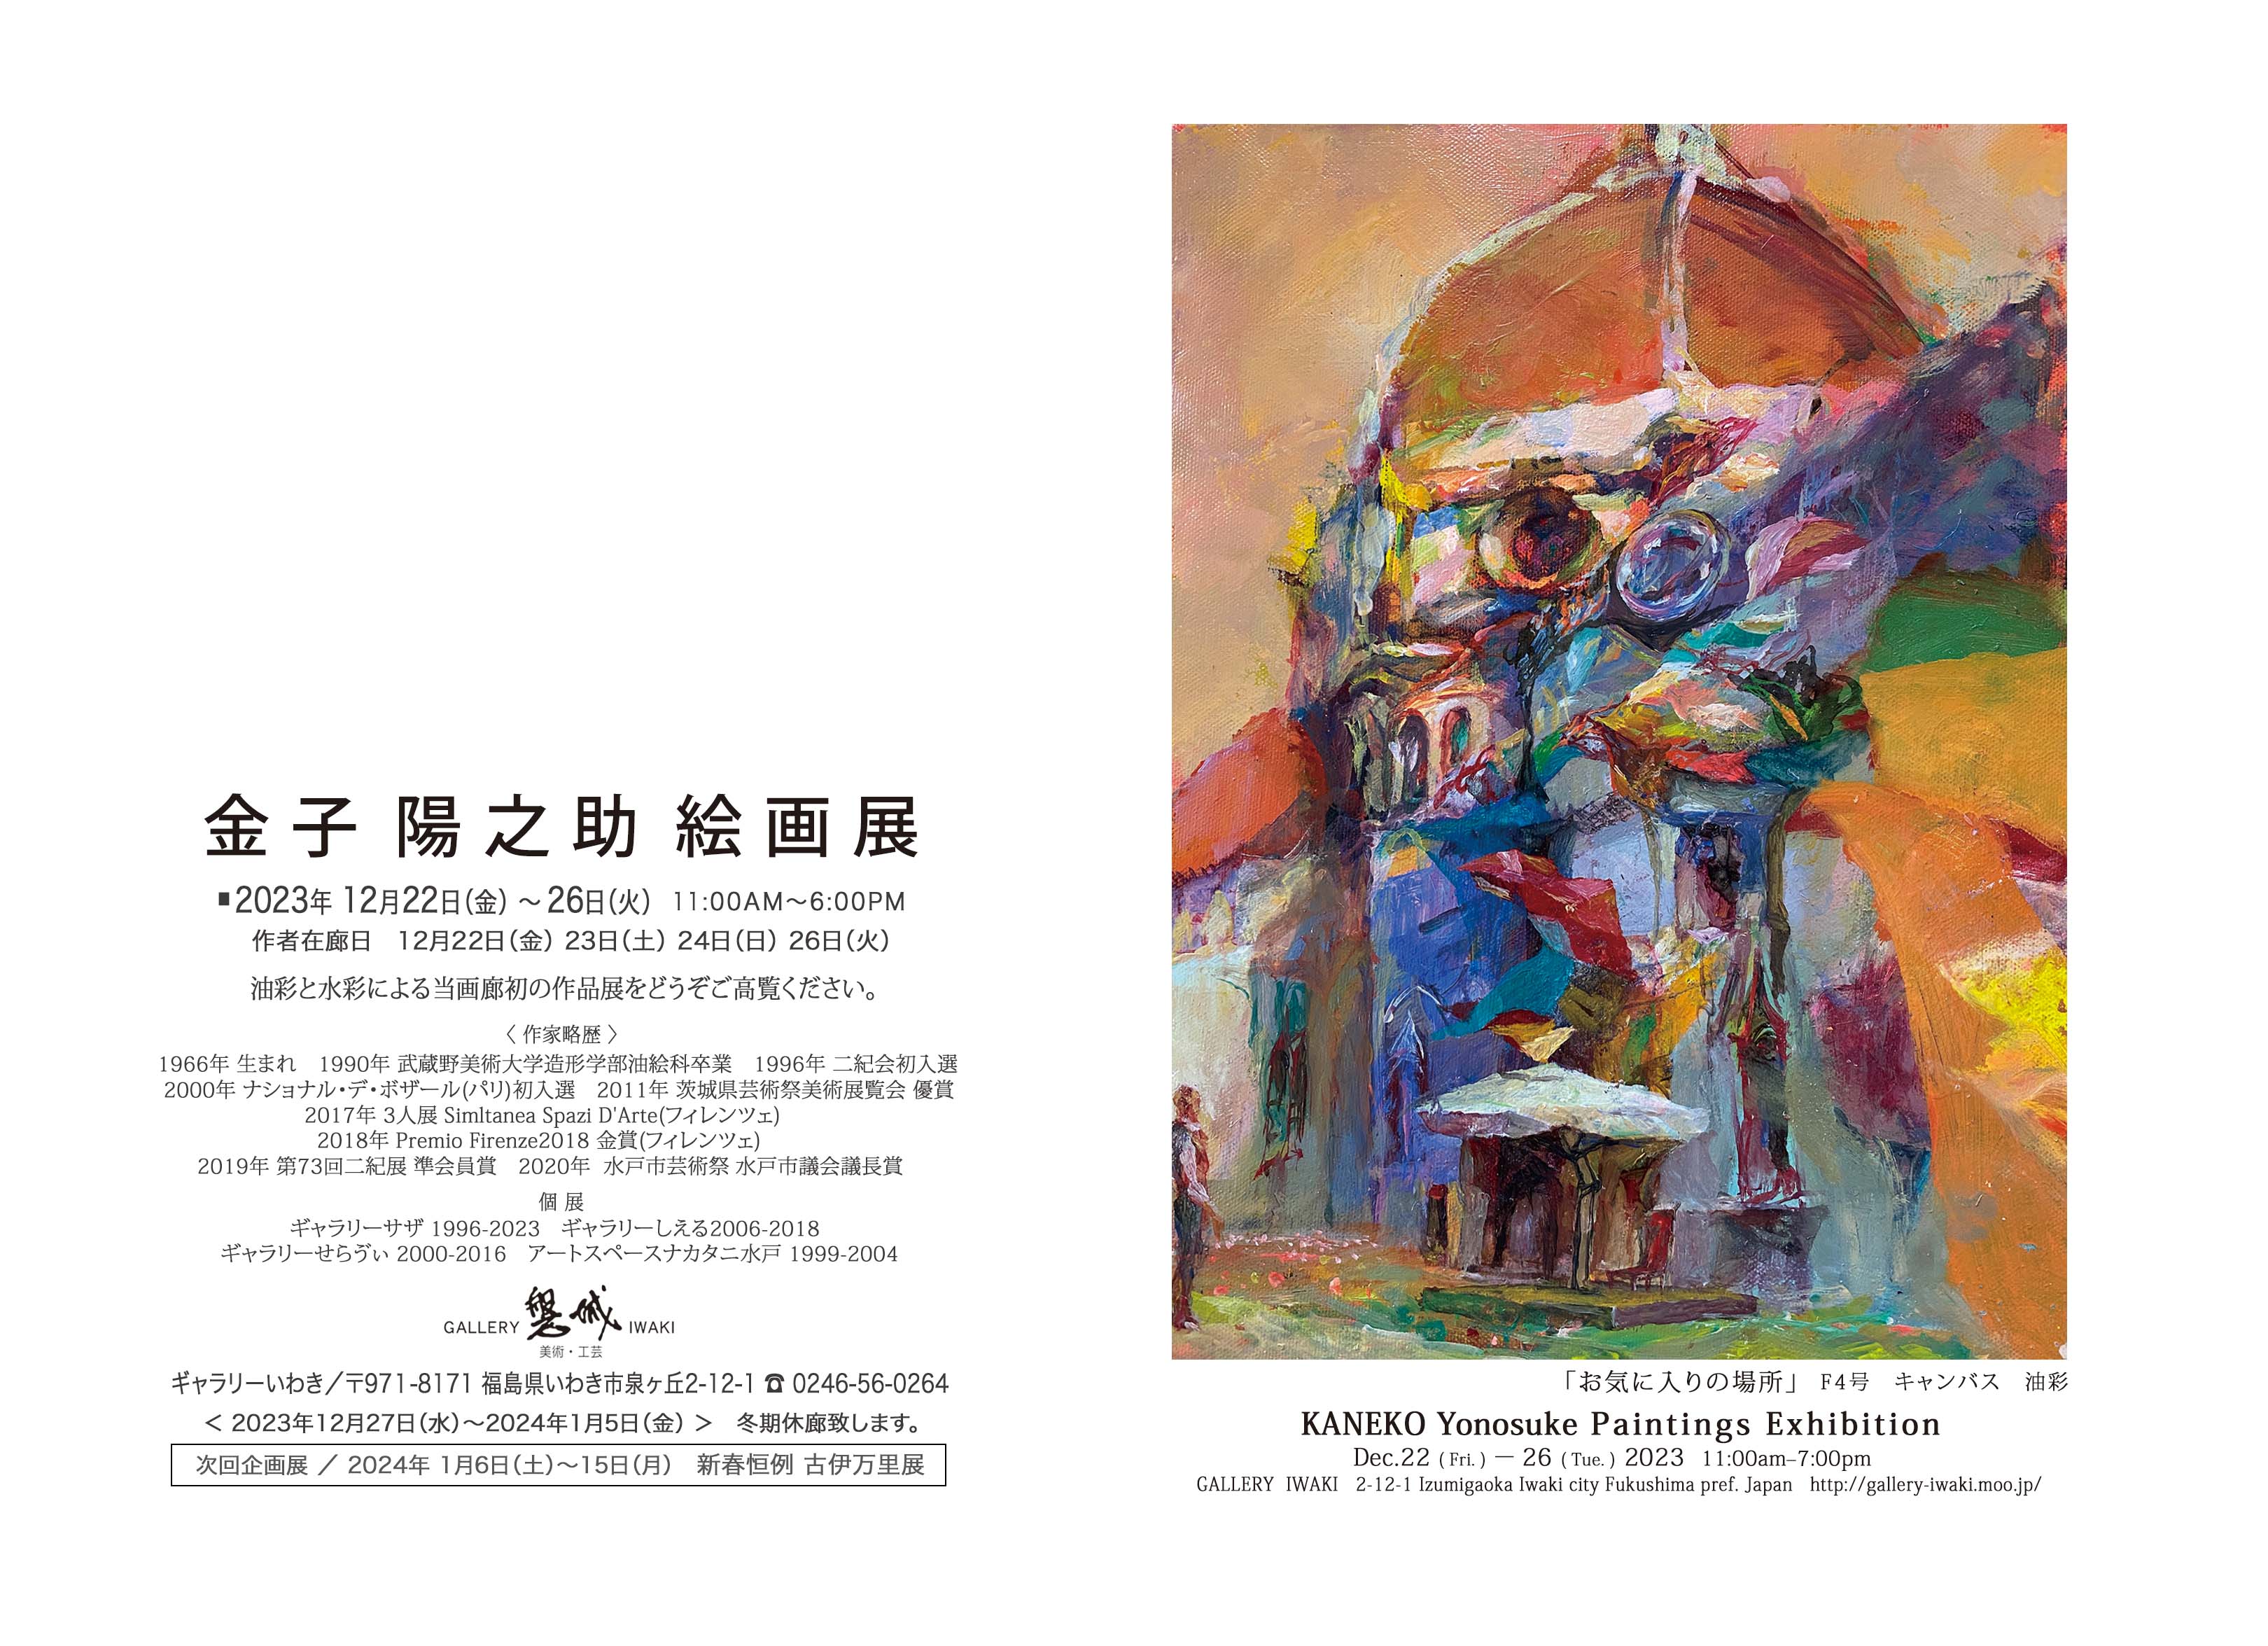 「金子陽之助 絵画展」2023年12月22日(金)～26日(火) ギャラリーいわき